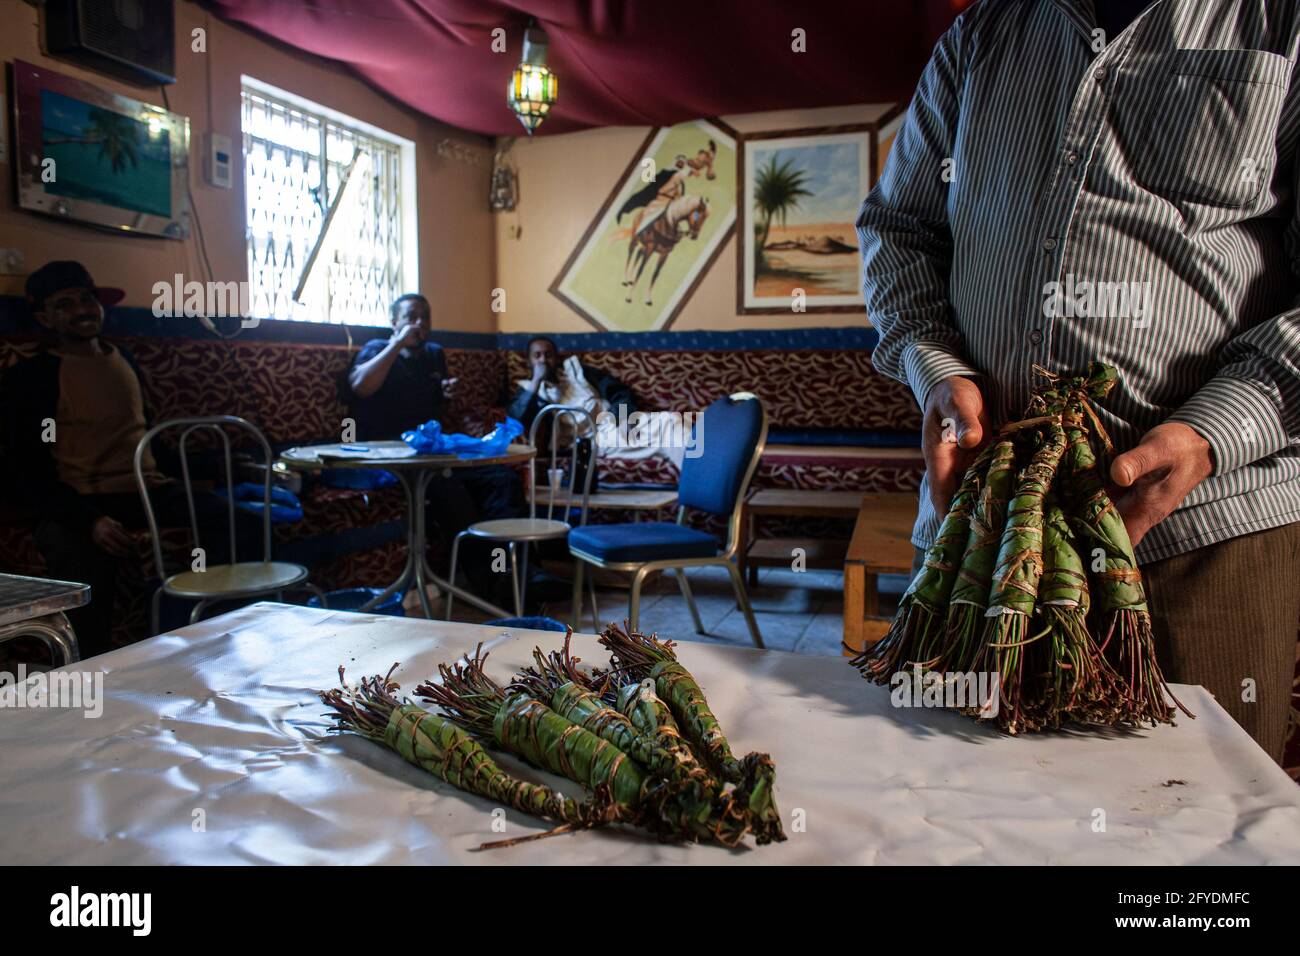 Camden, London, Großbritannien. Die Droge Khat auf dem Tisch im lokalen somalischen Café. Die hauptsächlich von Somaliern verwendete Droge wird im Vereinigten Königreich illegal. Stockfoto